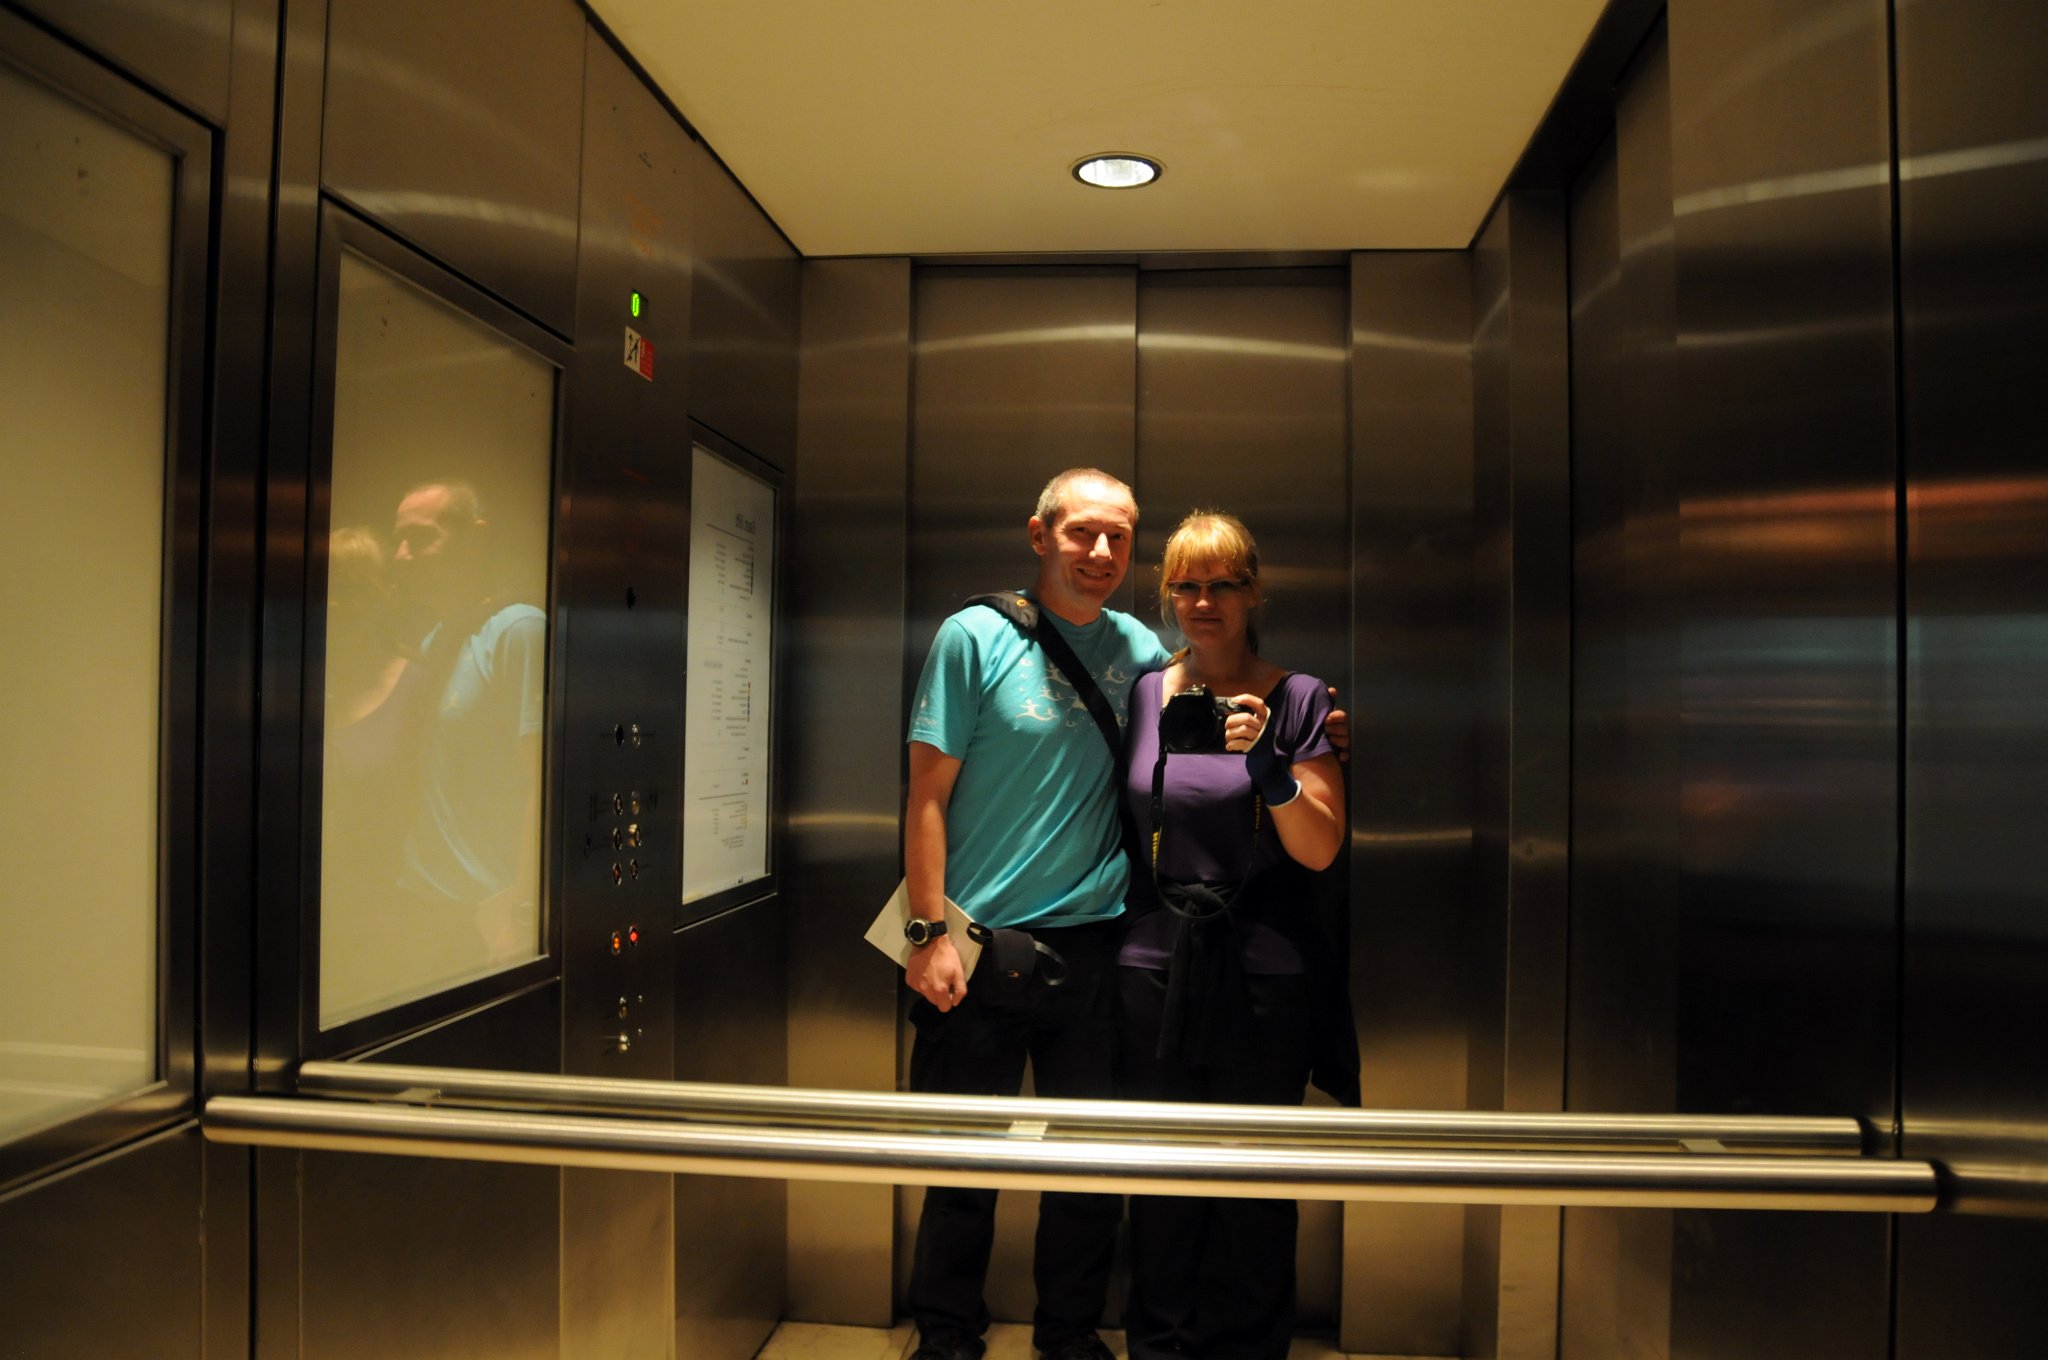 DSC_5996_3.jpg - Janina a Fili ve výtahu v Britském muzeu.